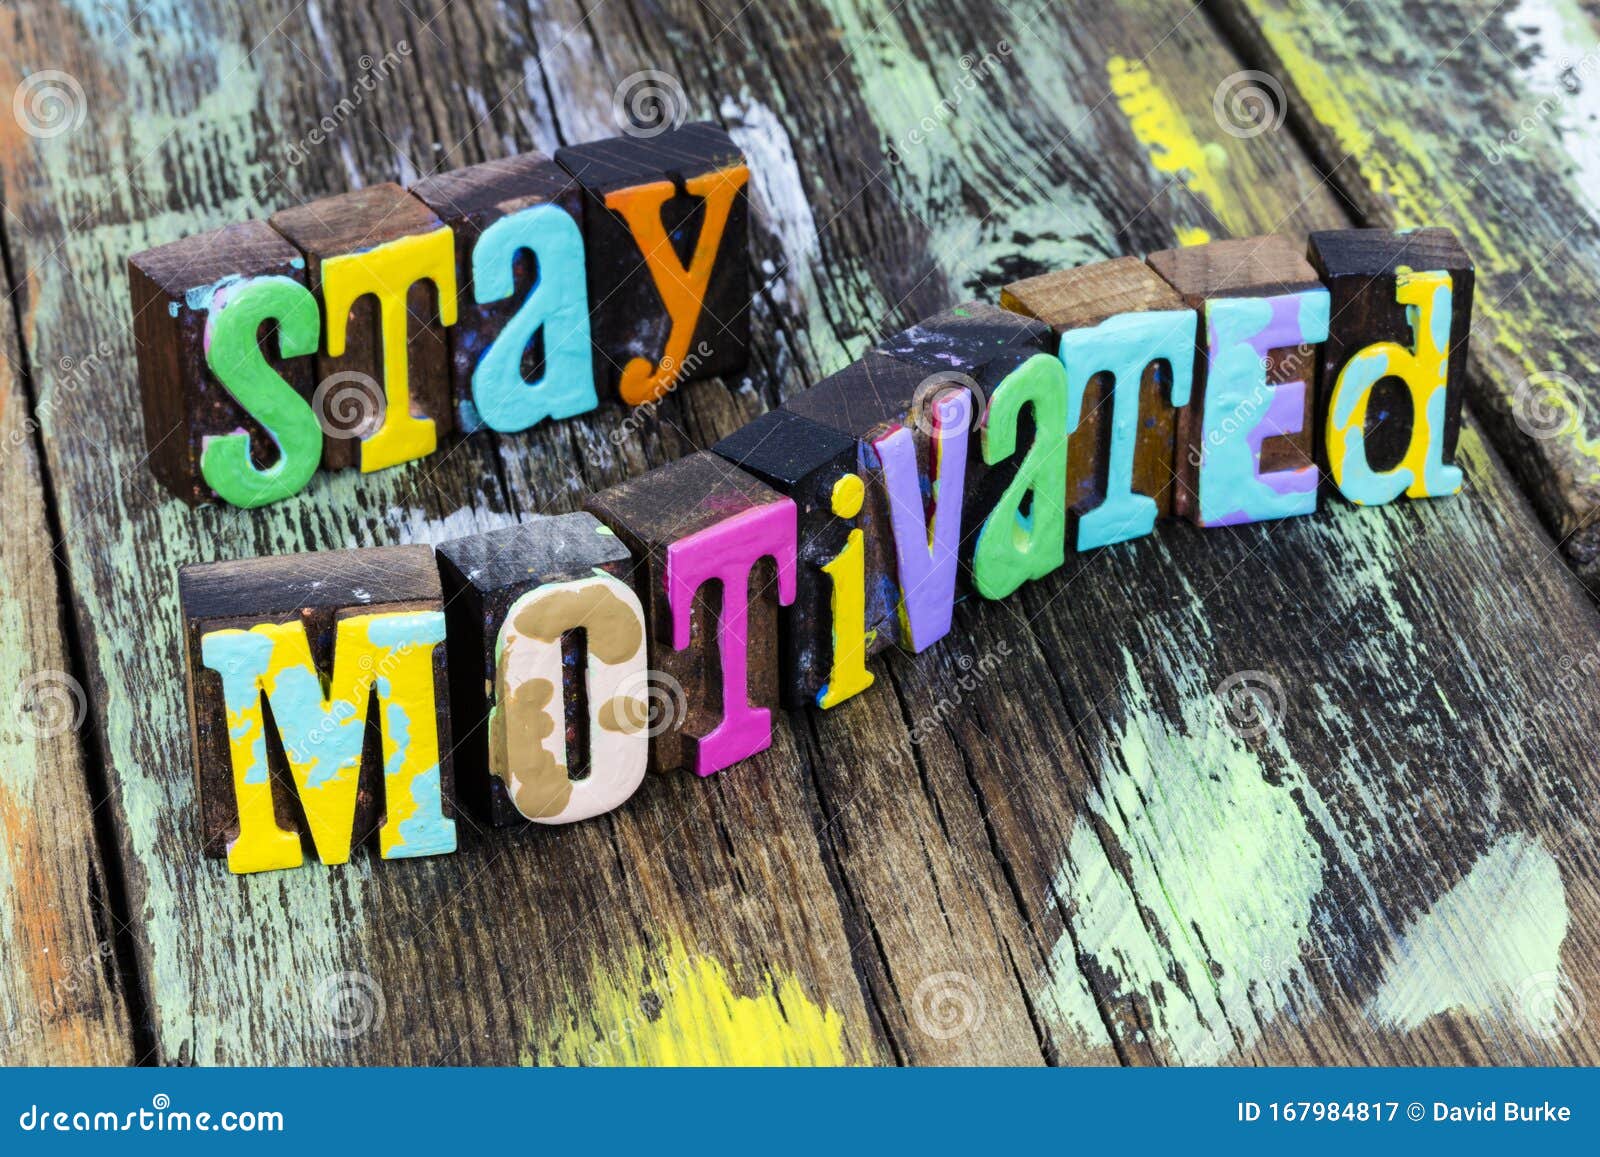 achieve motivated positive attitude motivation beautiful motivate achievement life success